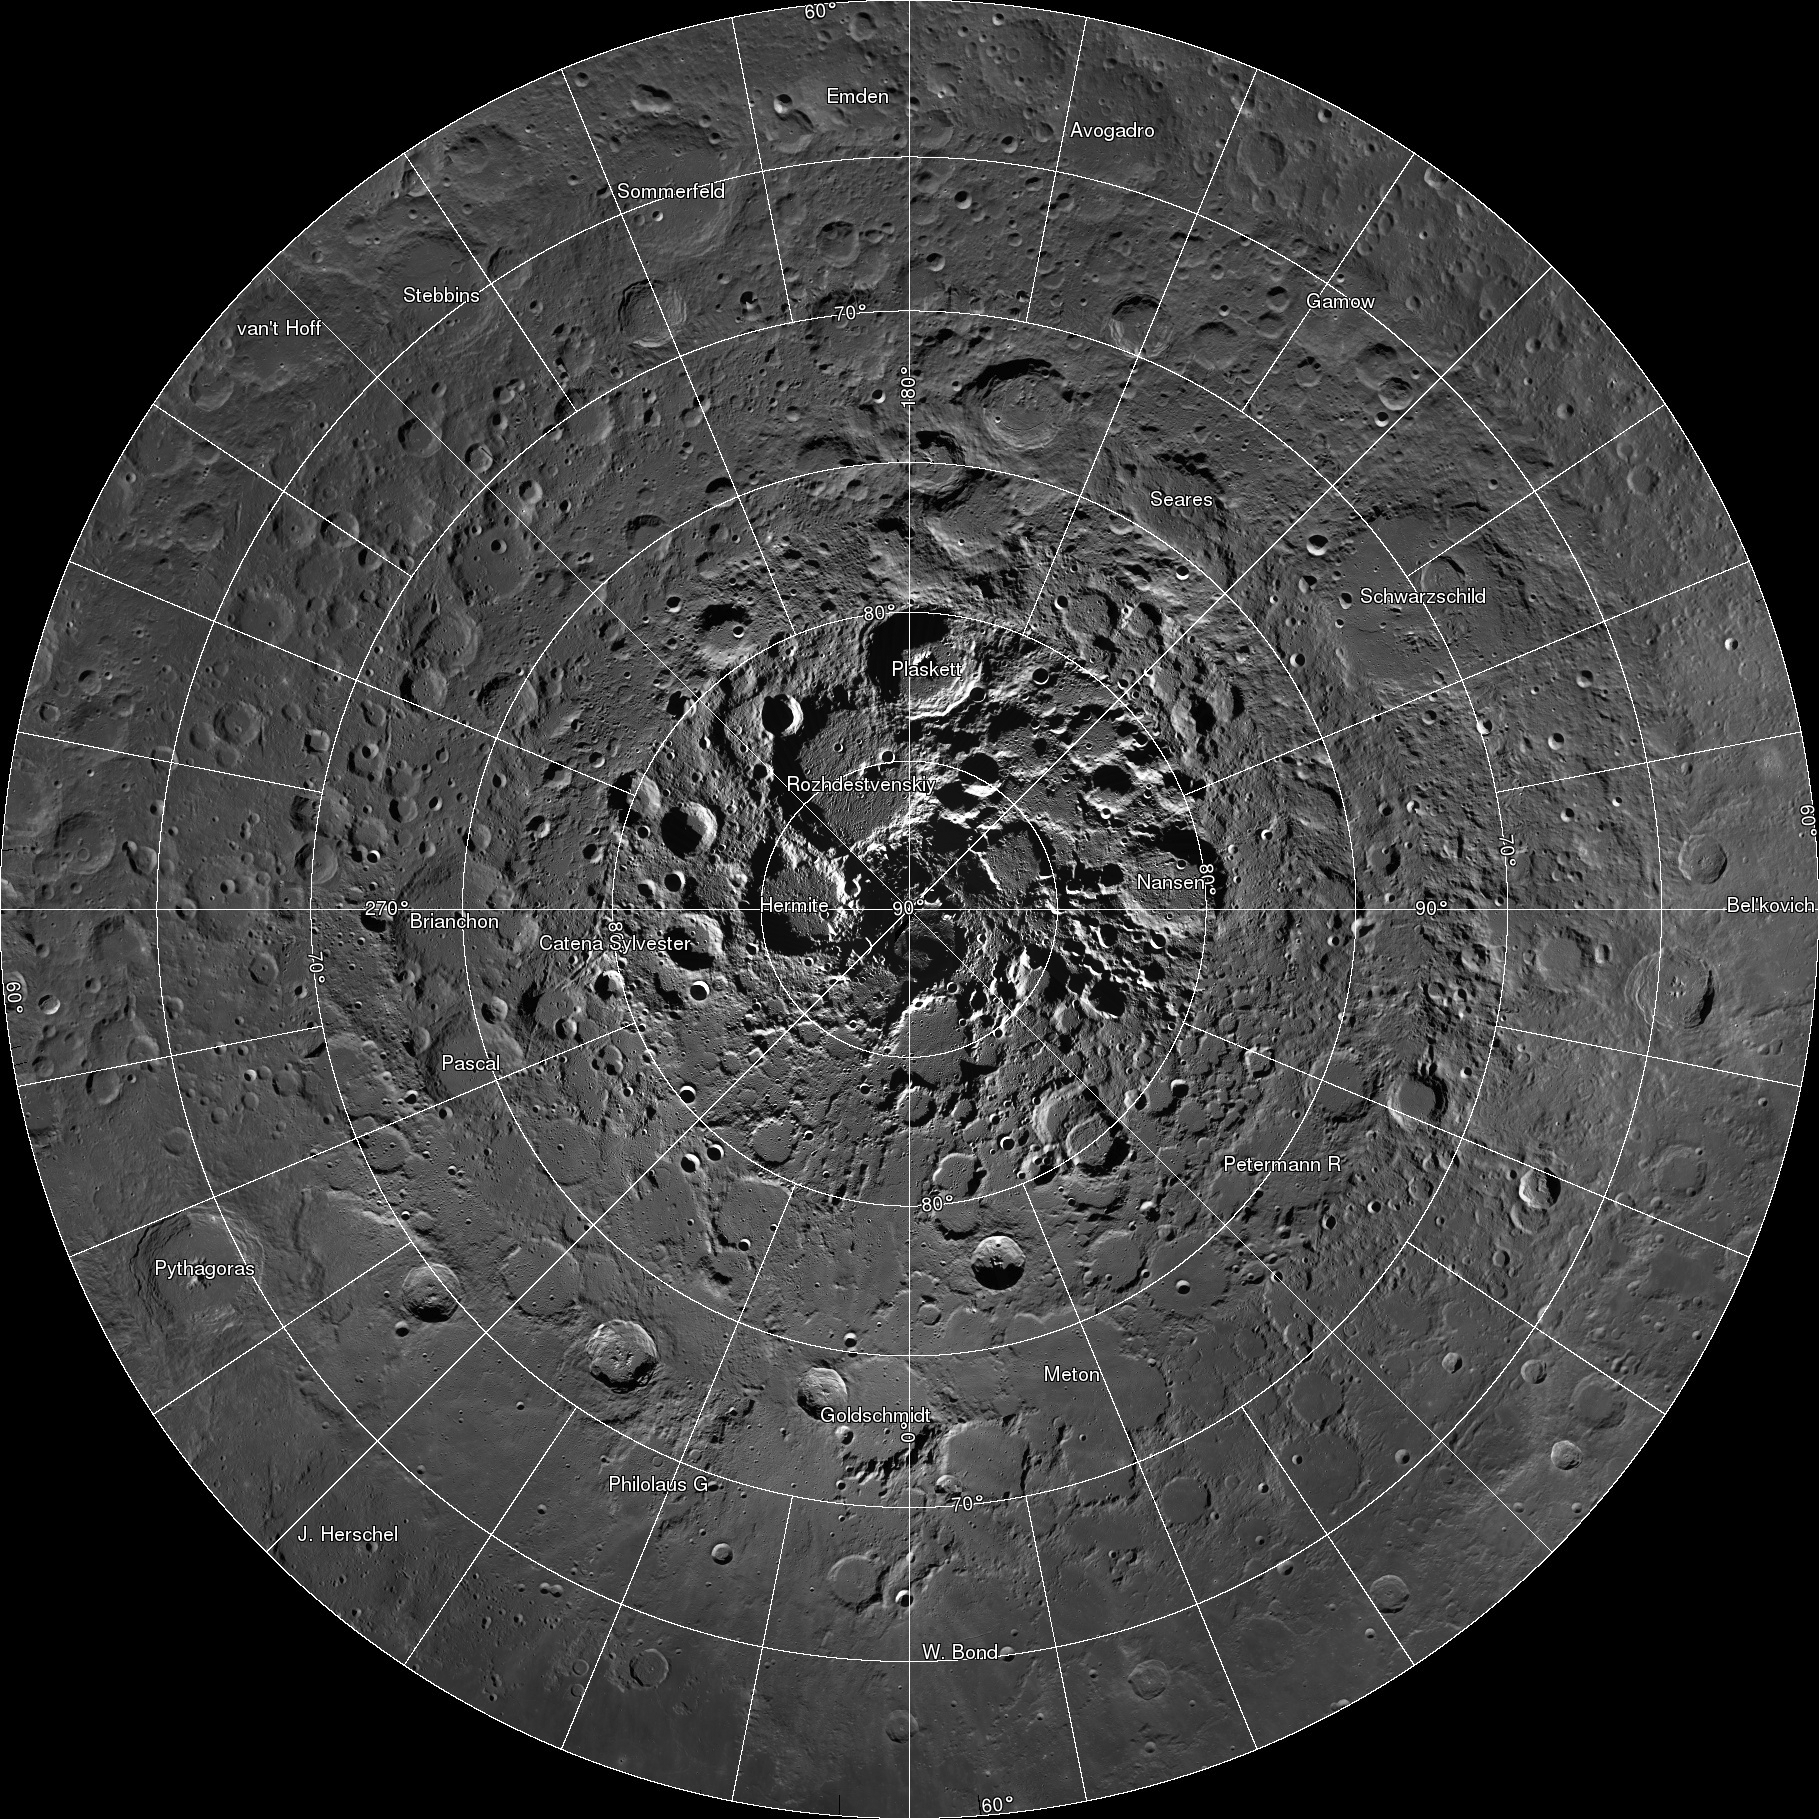 Explorez l’immense carte interactive du pôle nord de la Lune